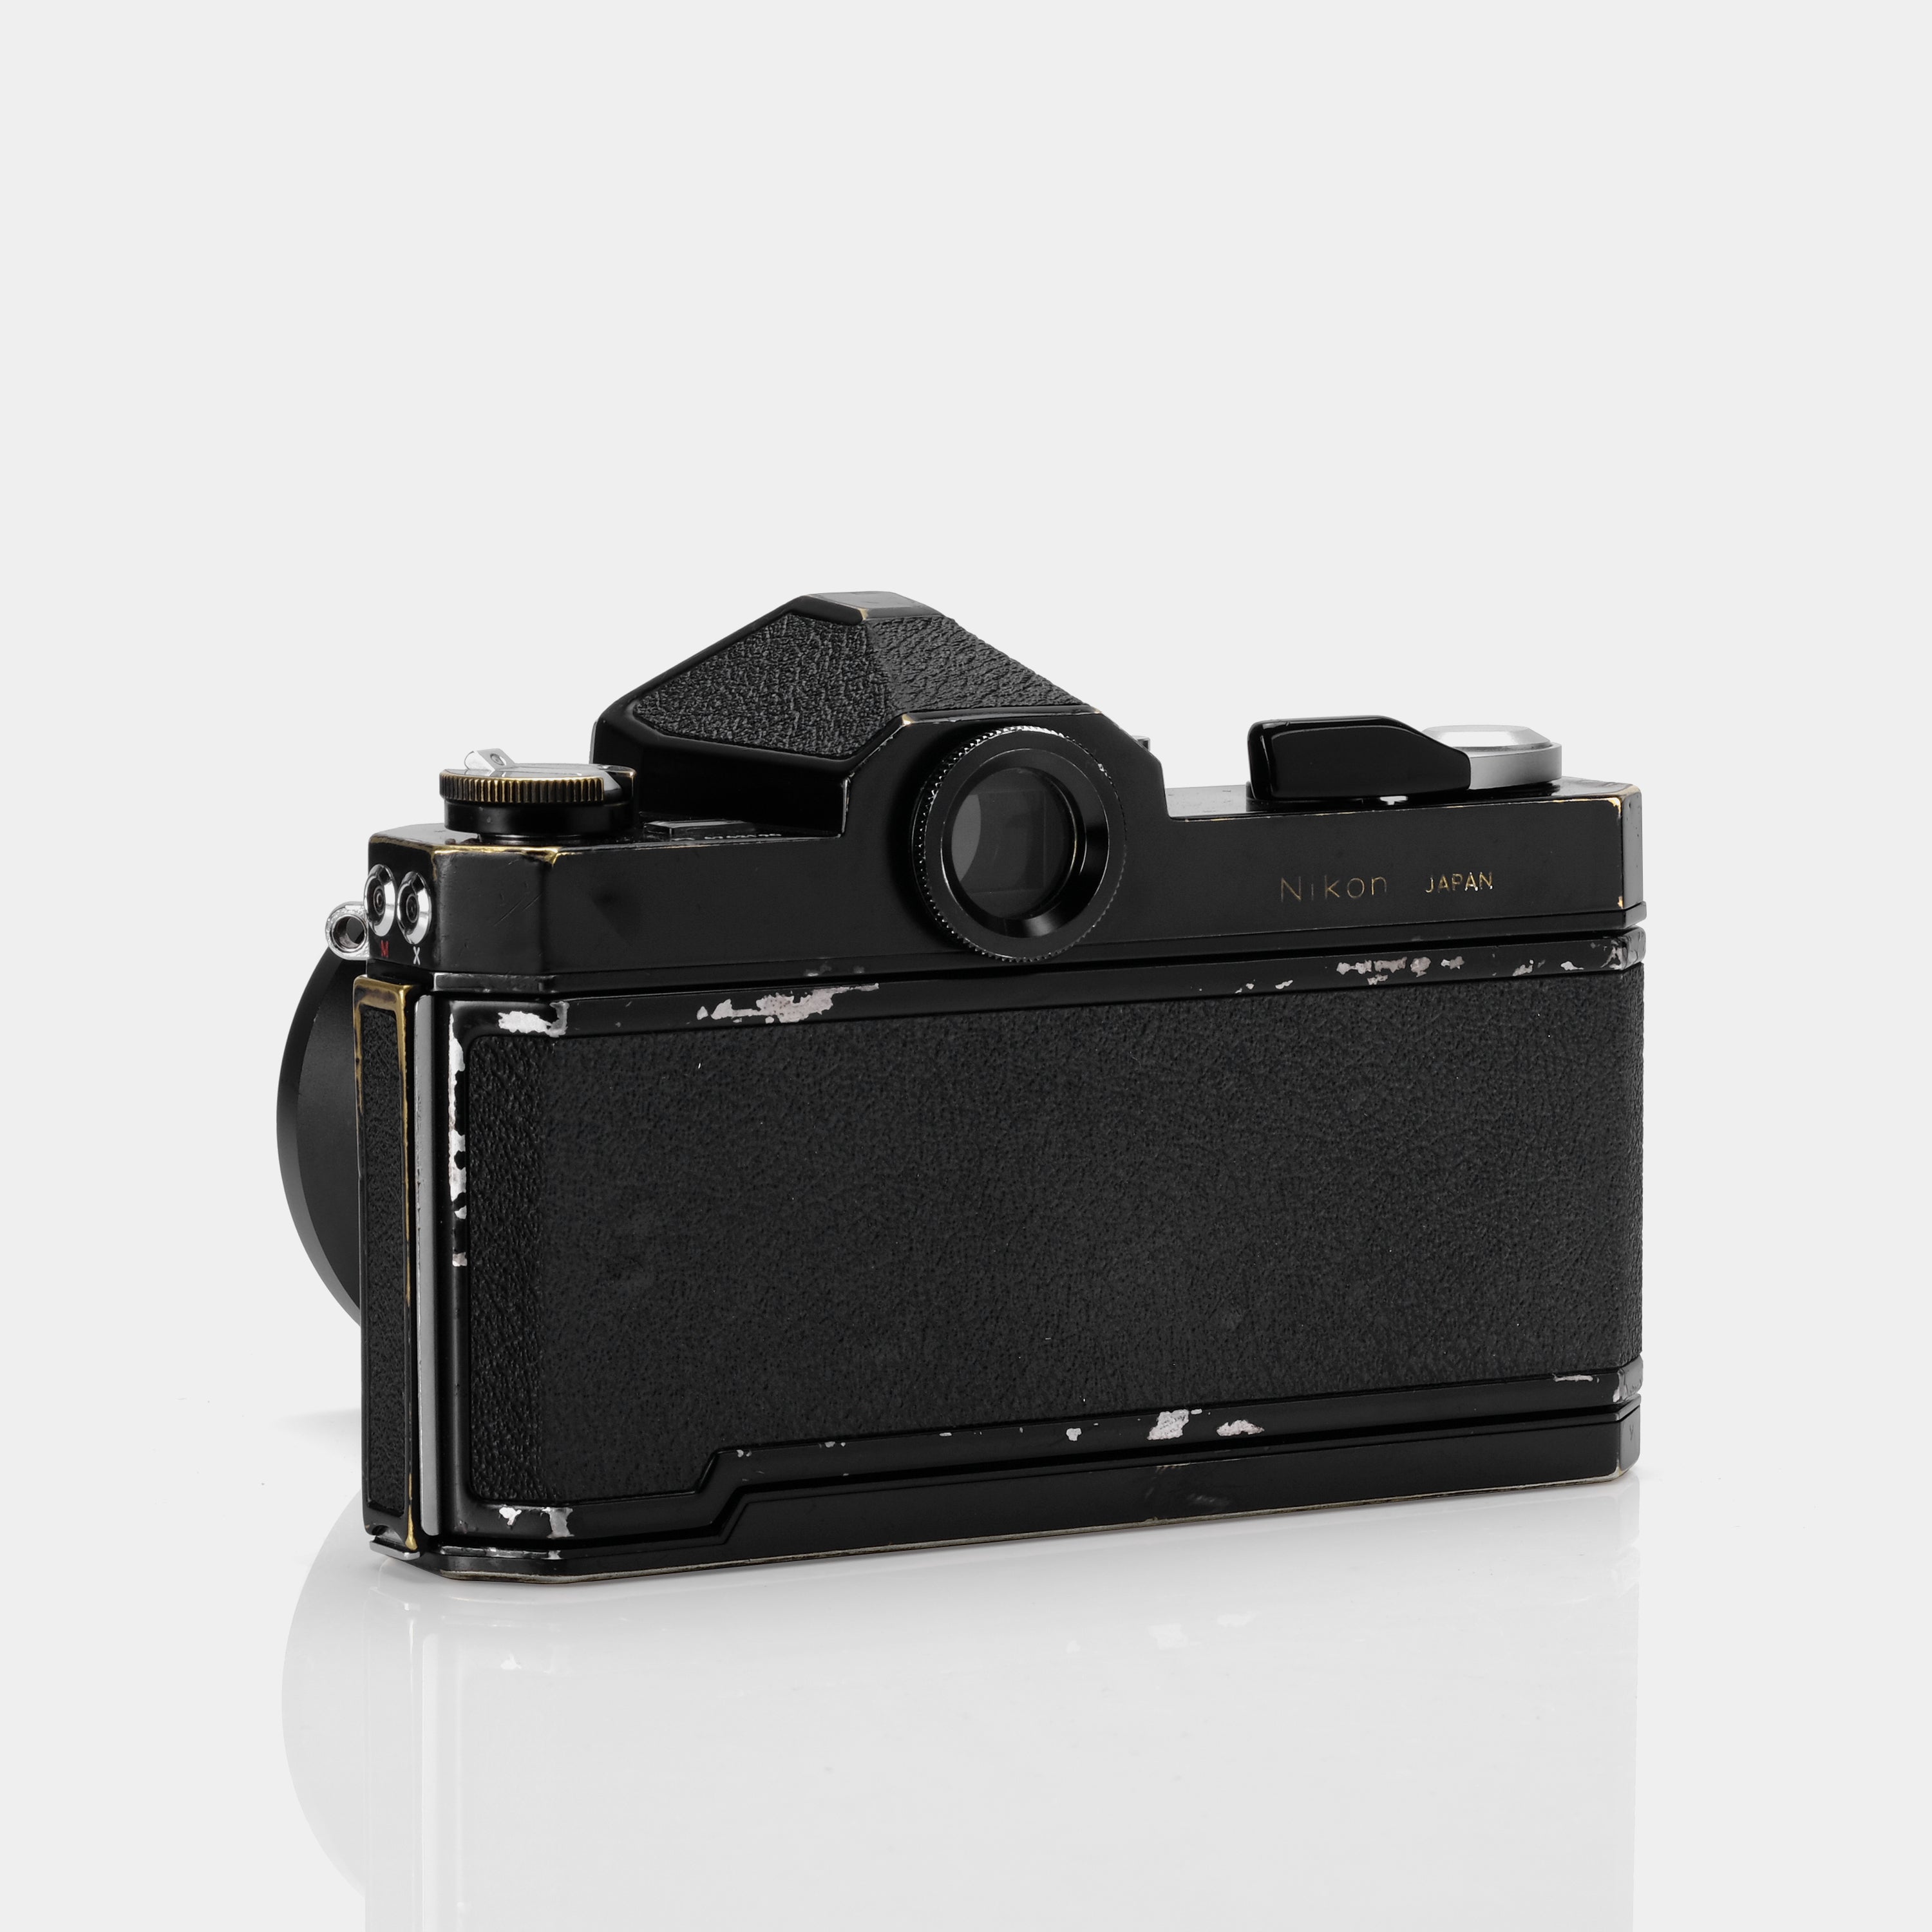 Nikkormat FTn SLR 35mm Film Camera